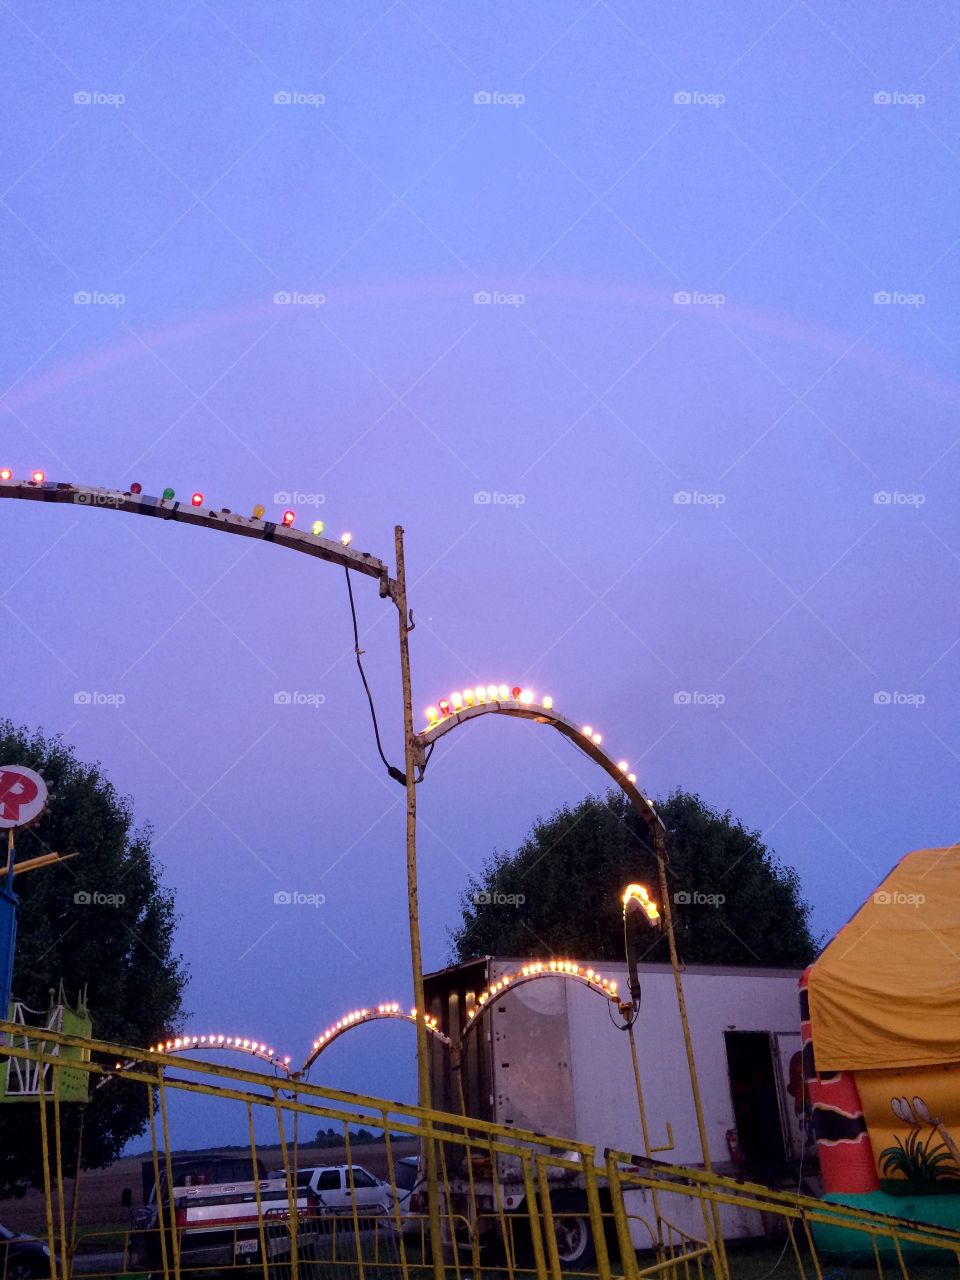 Rainbow at the fair 